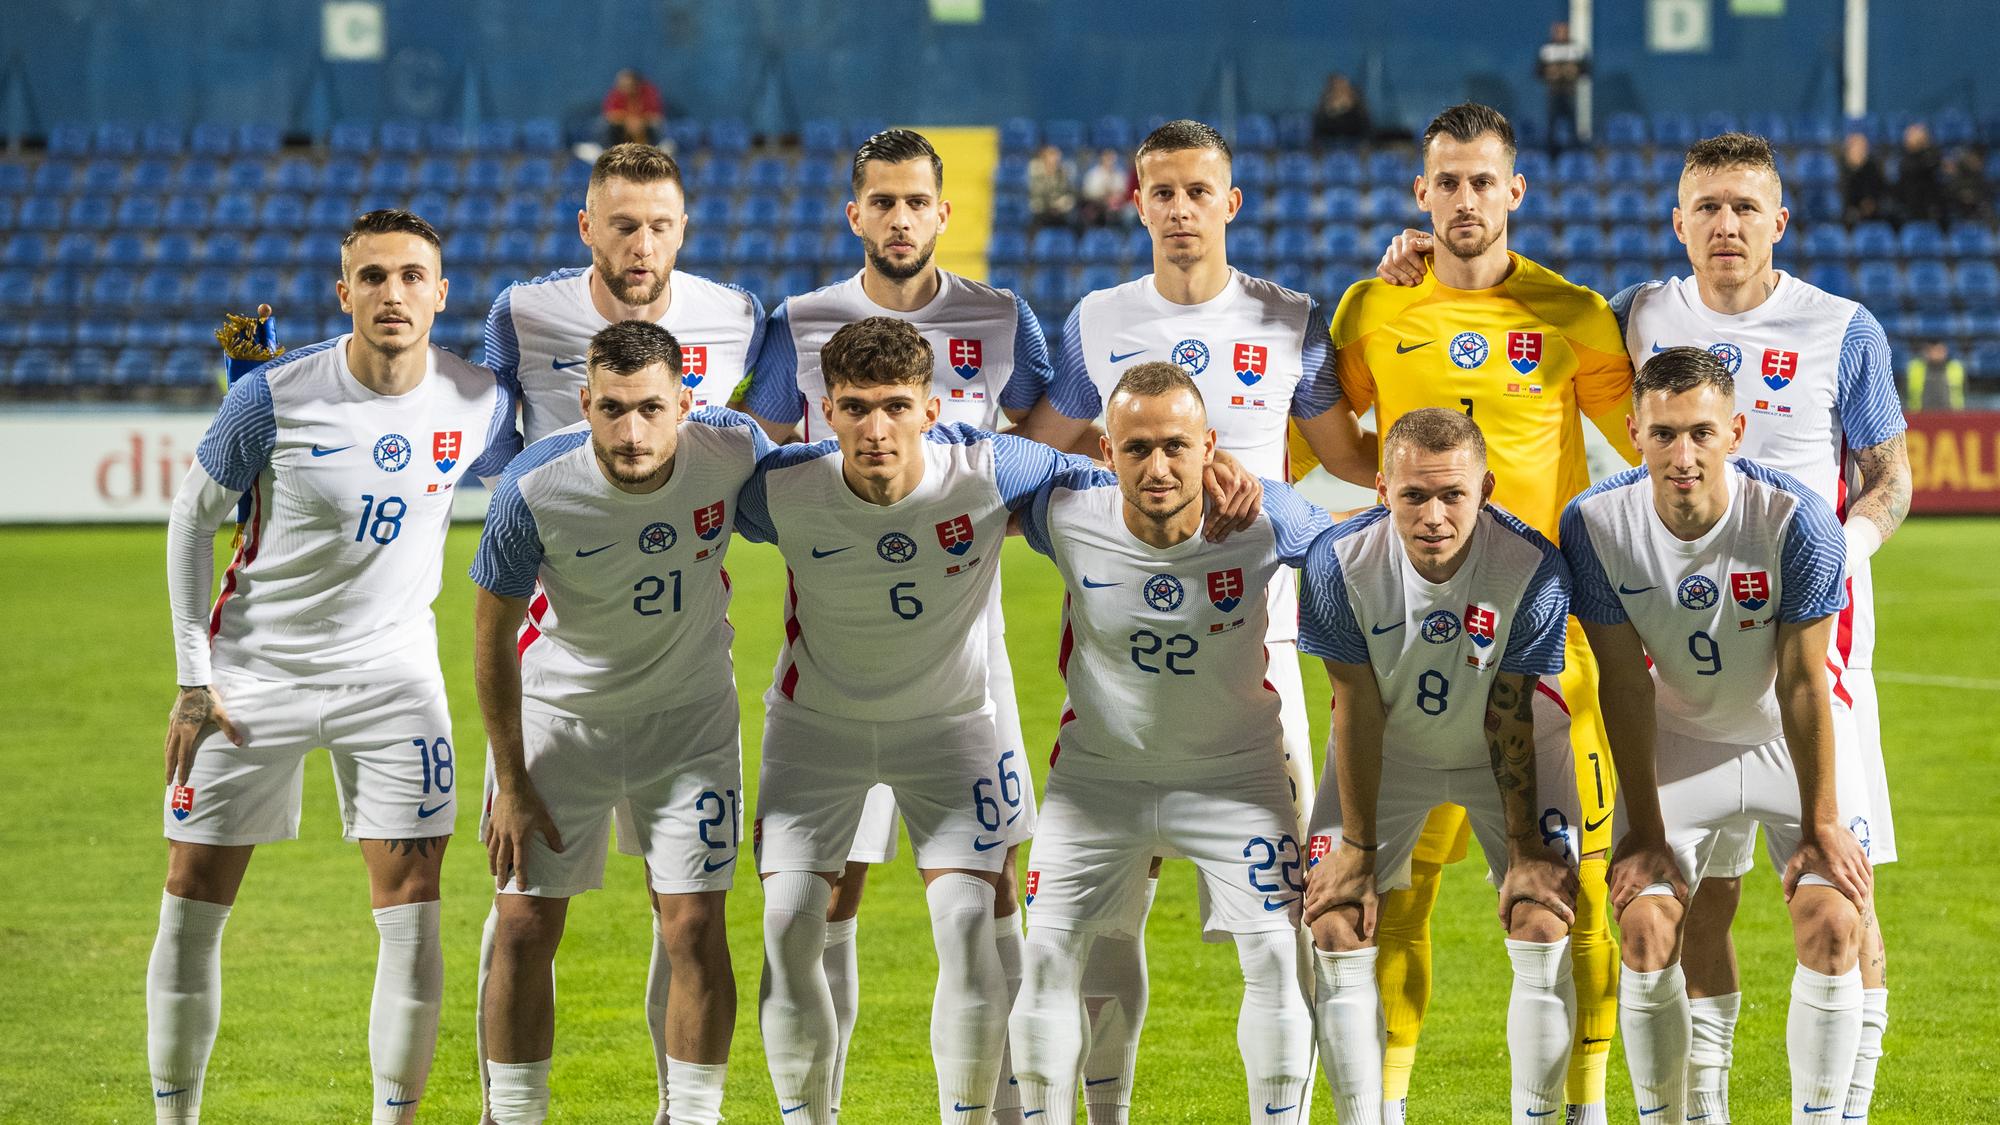 spálne ucho fascinujúce futbal slovenský pohár 2017 18 štrk teach Bezcenný